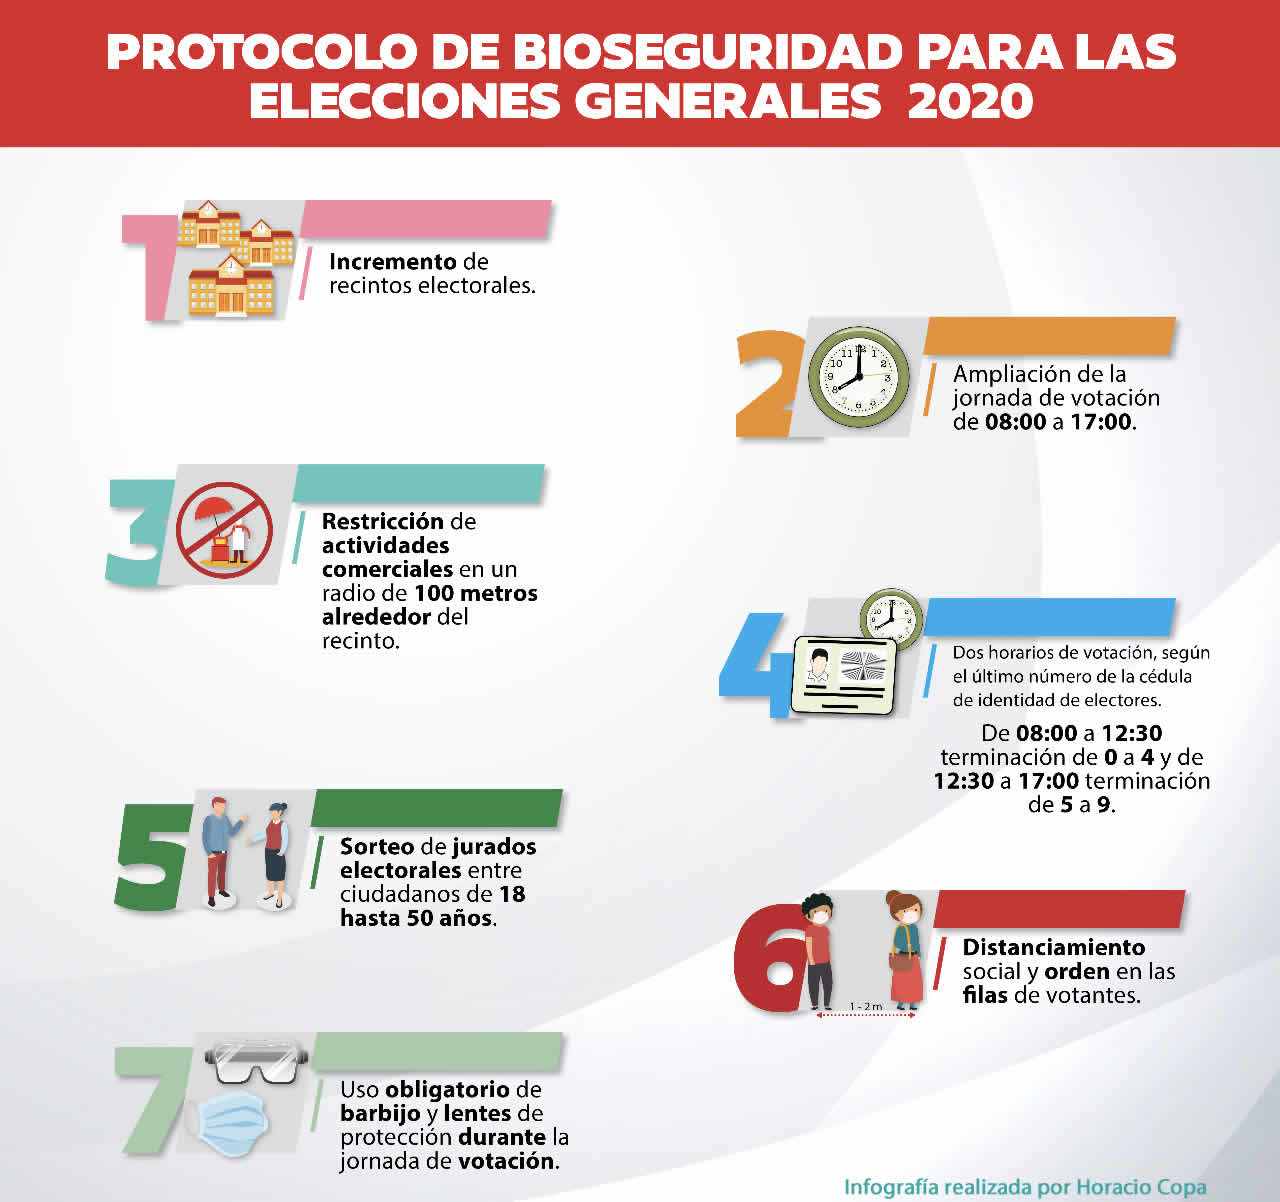 Infografía del protocolo de bioseguridad para las elecciones generales en Bolivia 2020